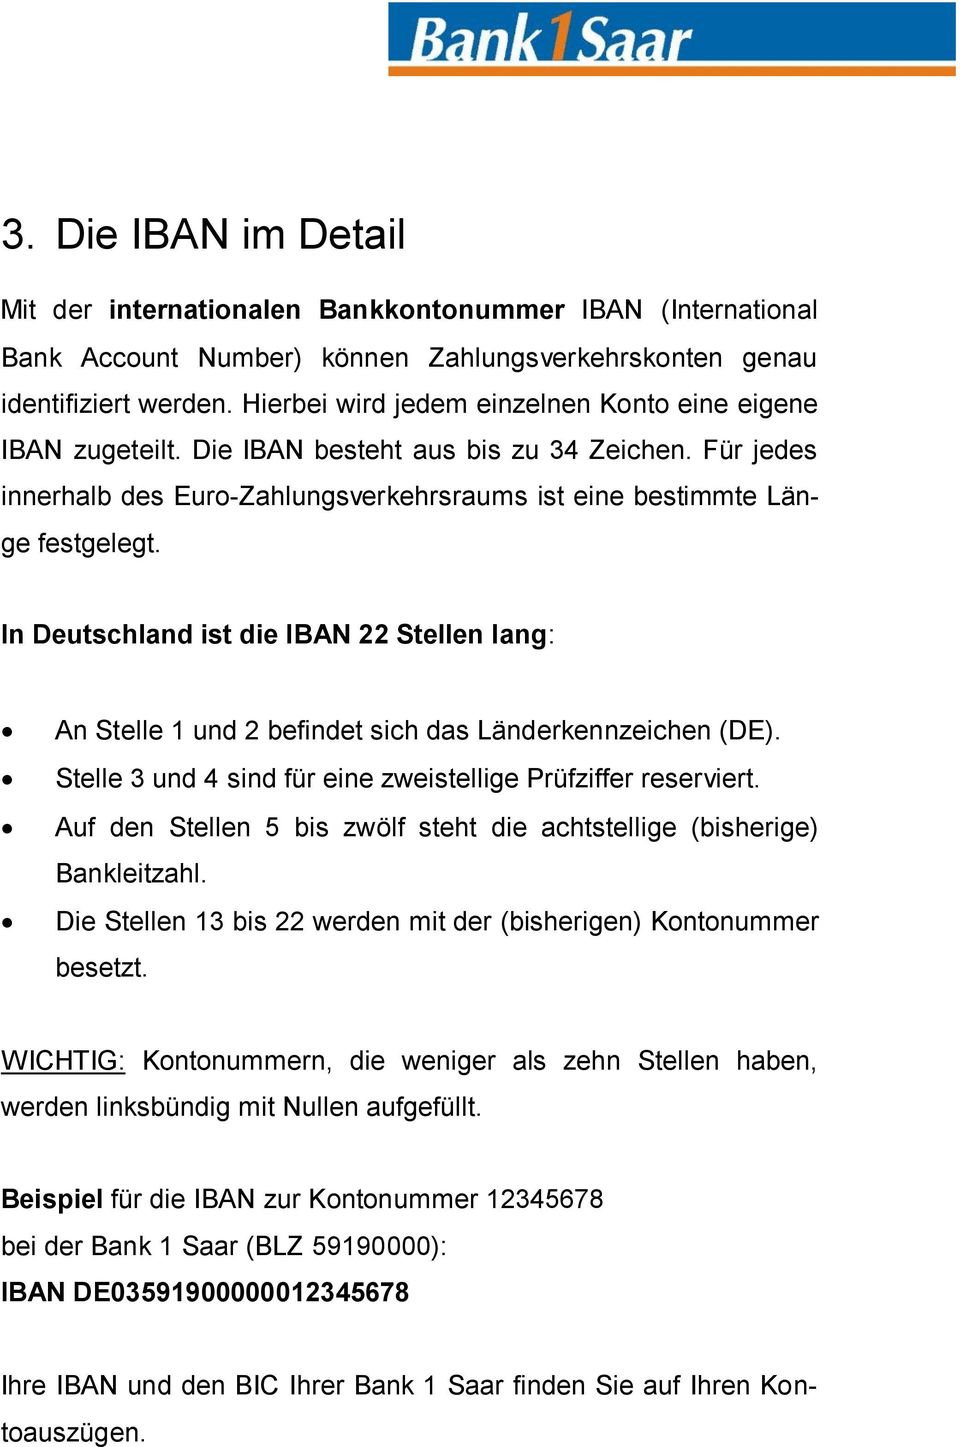 In Deutschland ist die IBAN 22 Stellen lang: An Stelle 1 und 2 befindet sich das Länderkennzeichen (DE). Stelle 3 und 4 sind für eine zweistellige Prüfziffer reserviert.